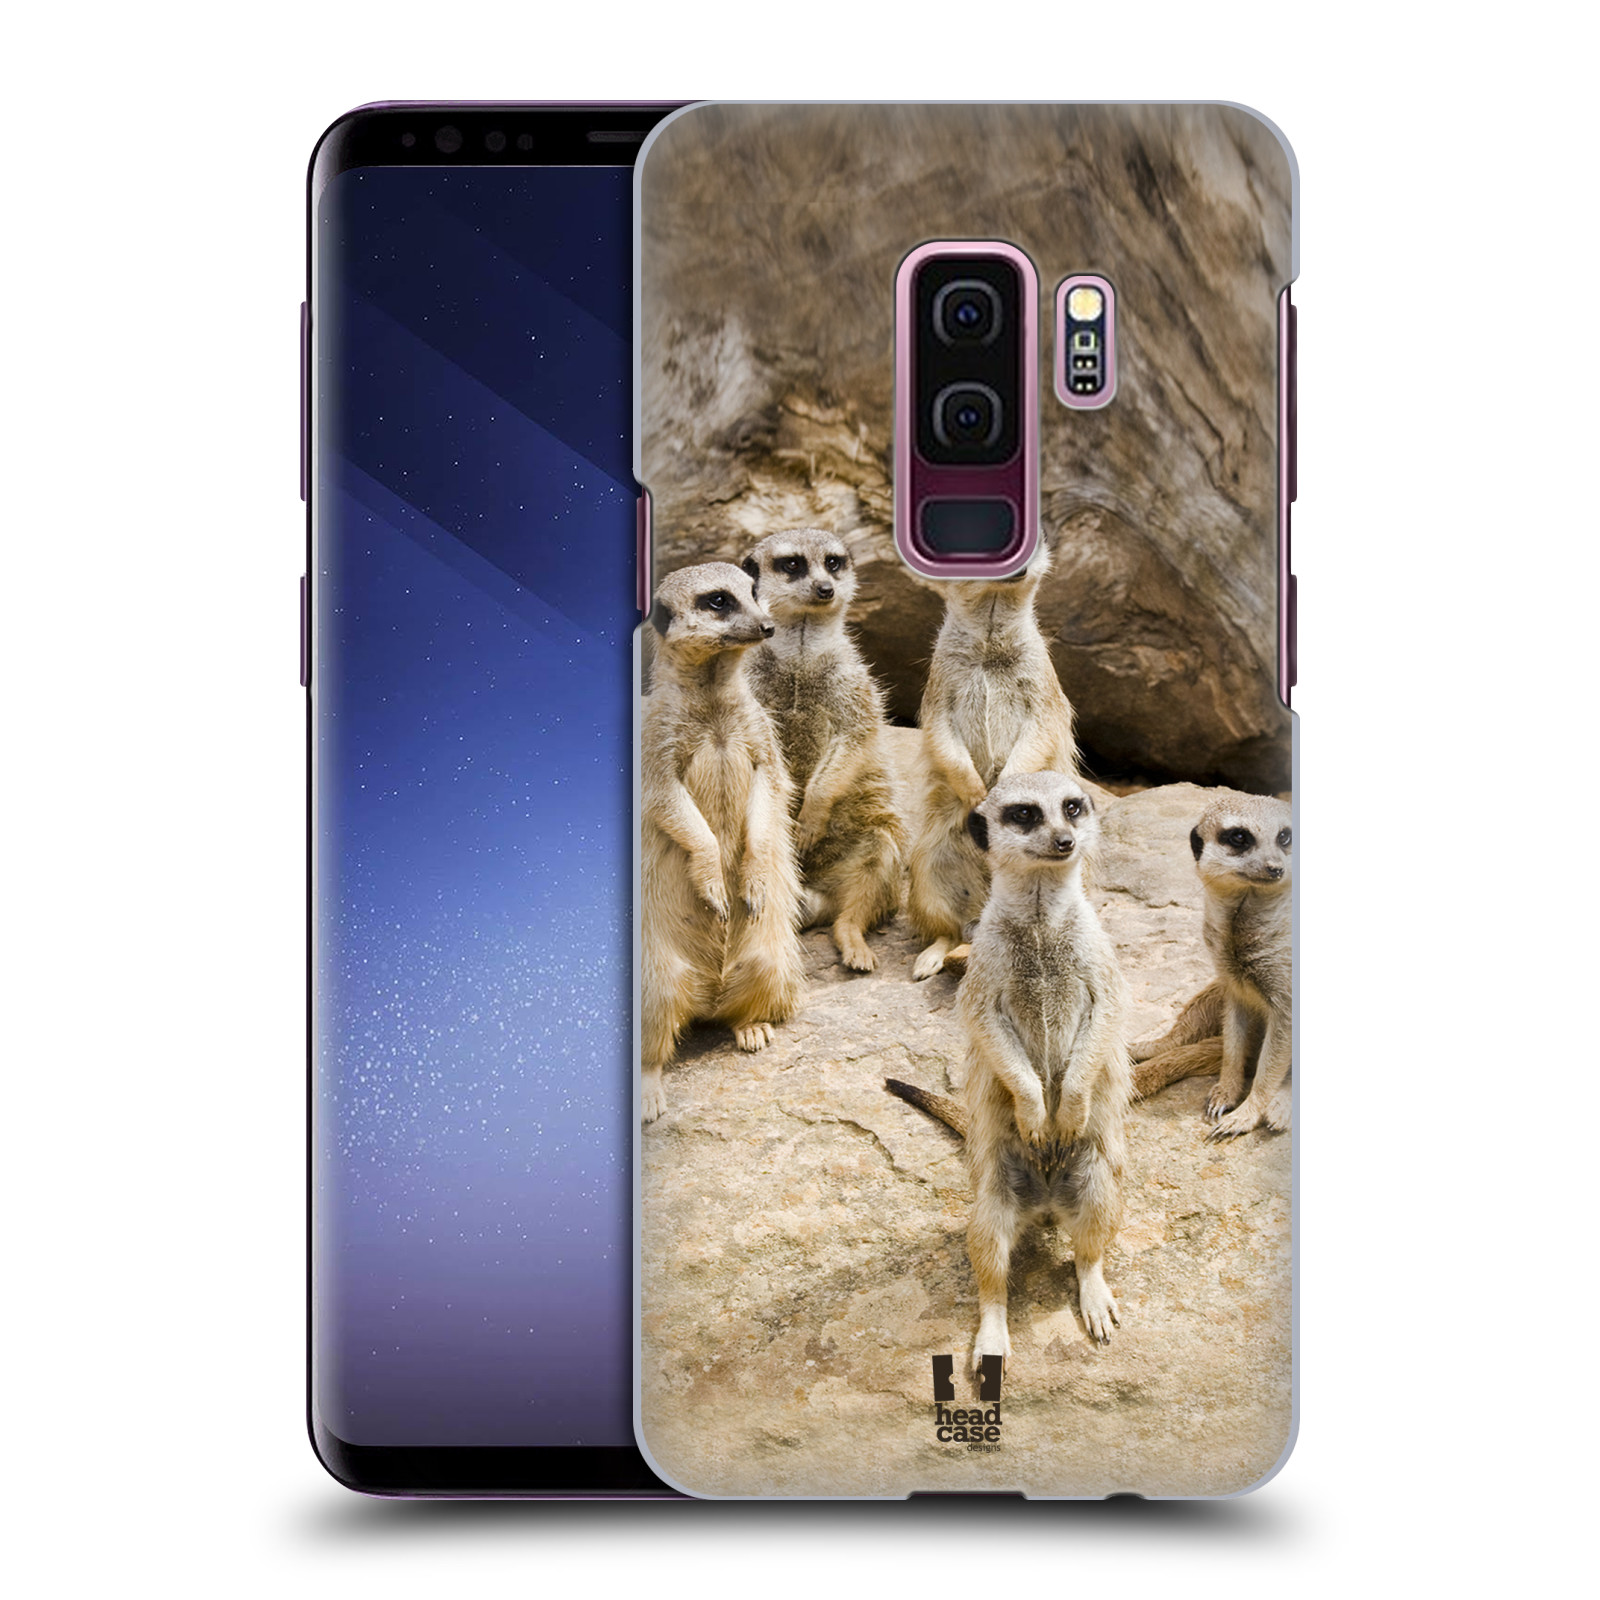 Zadní obal pro mobil Samsung Galaxy S9 PLUS - HEAD CASE - Svět zvířat roztomilé surikaty